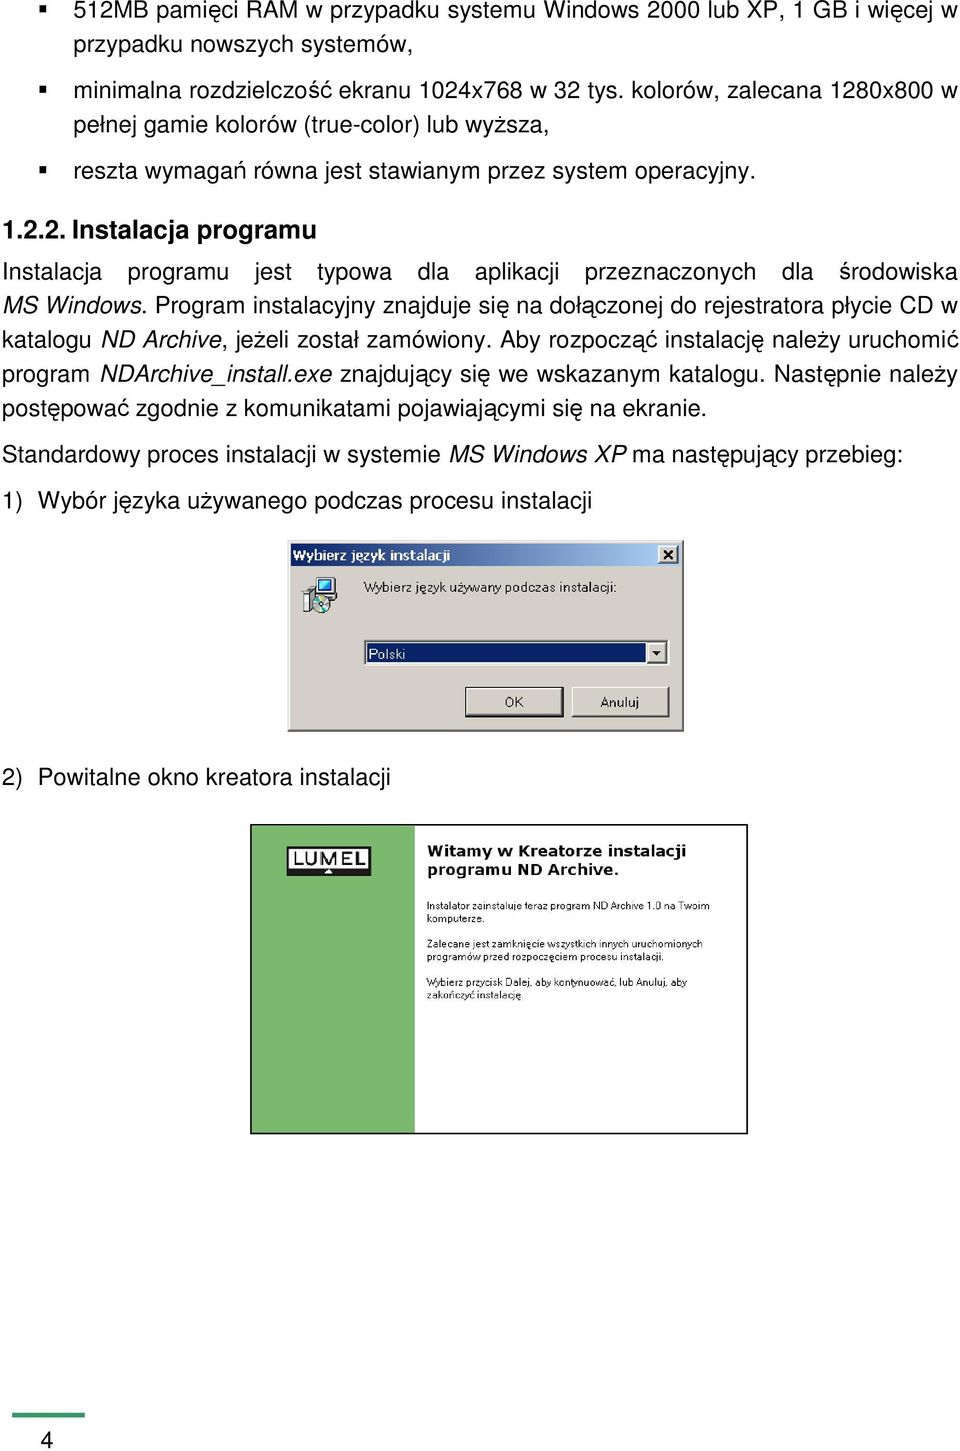 Program instalacyjny znajduje się na dołączonej do rejestratora płycie CD w katalogu ND Archive, jeŝeli został zamówiony. Aby rozpocząć instalację naleŝy uruchomić program NDArchive_install.